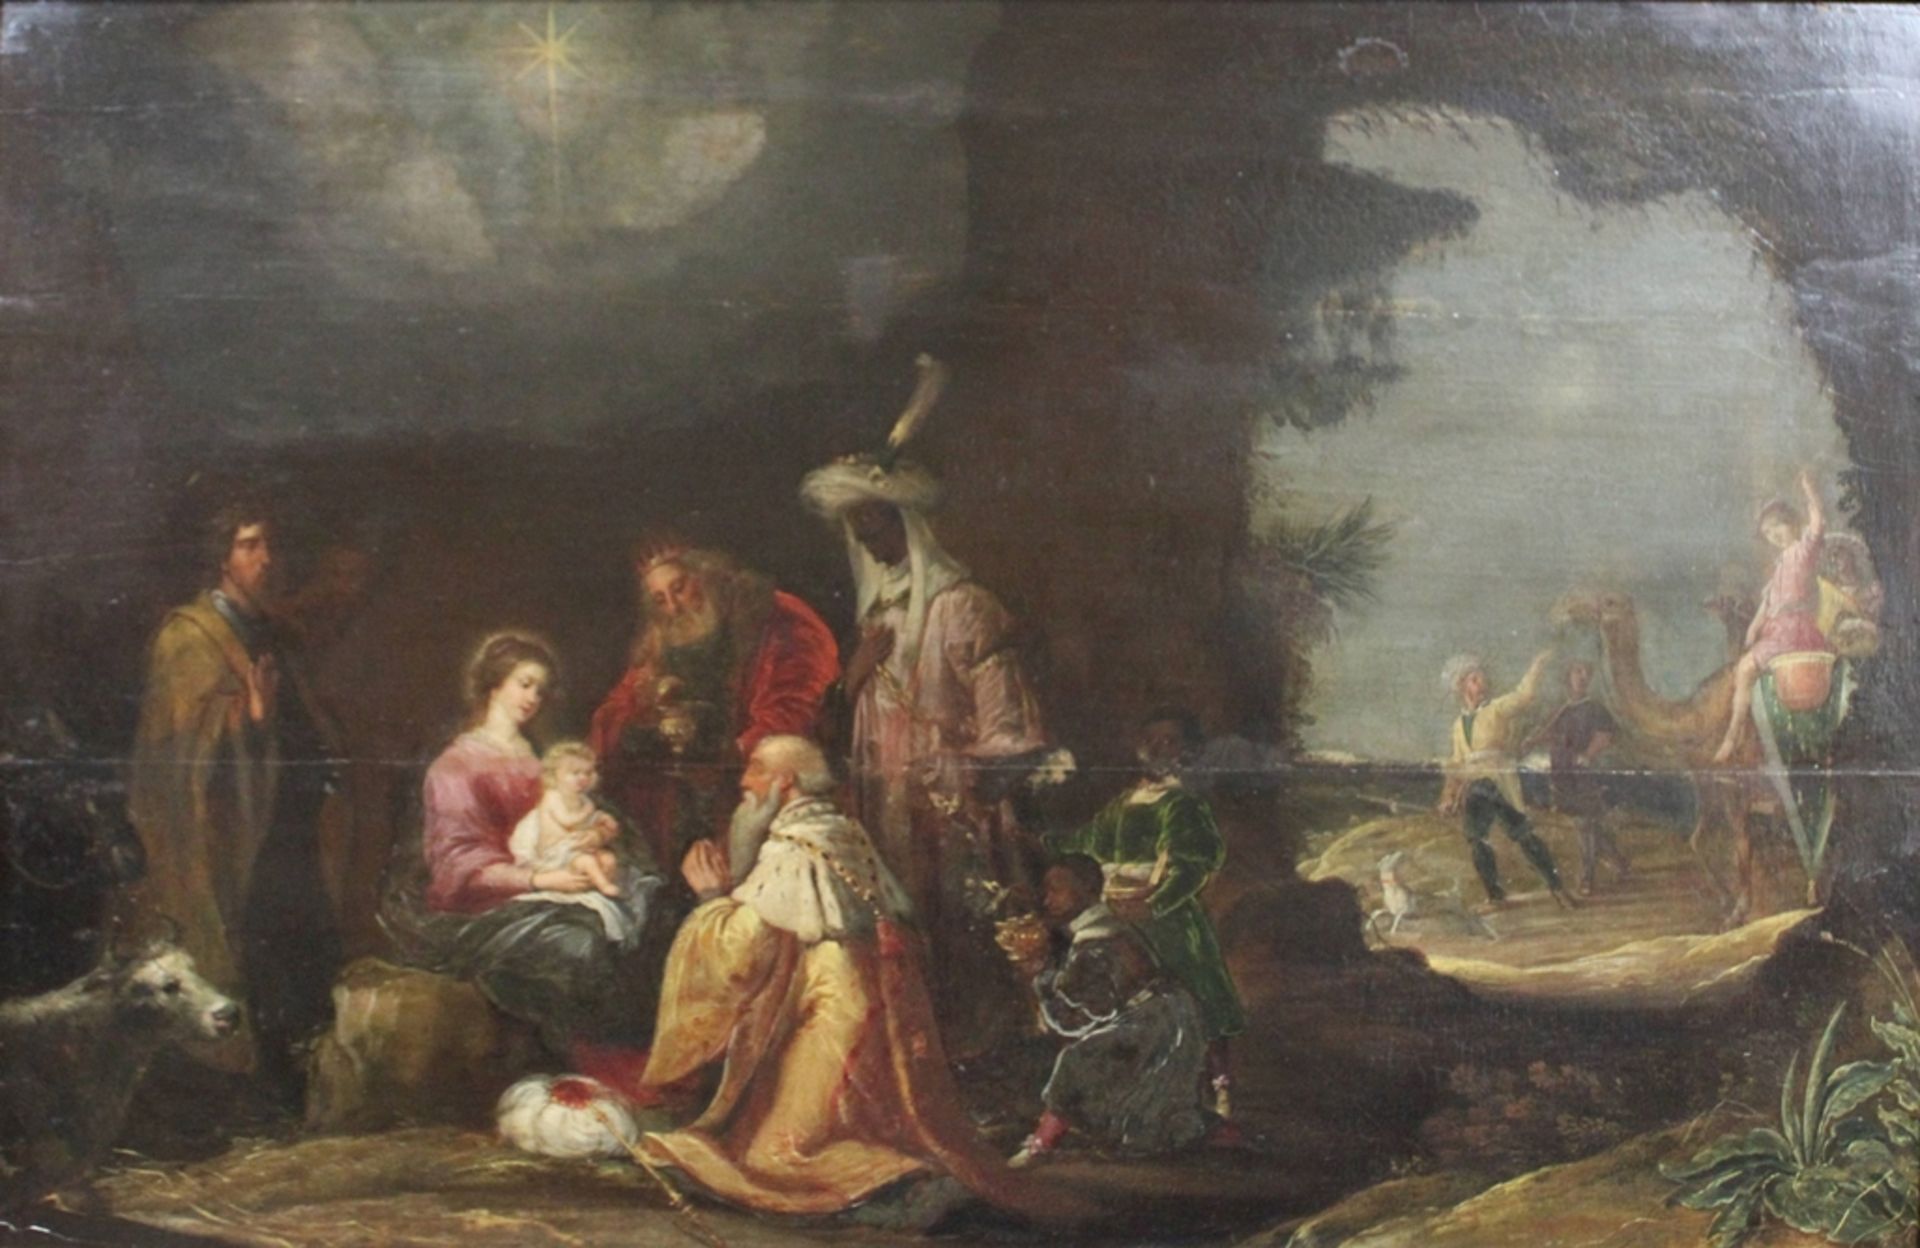 David Teniers d. J. (flämisch, 1610 - 1690), Die Anbetung der Heiligen drei Könige, 17. Jh., Öl auf